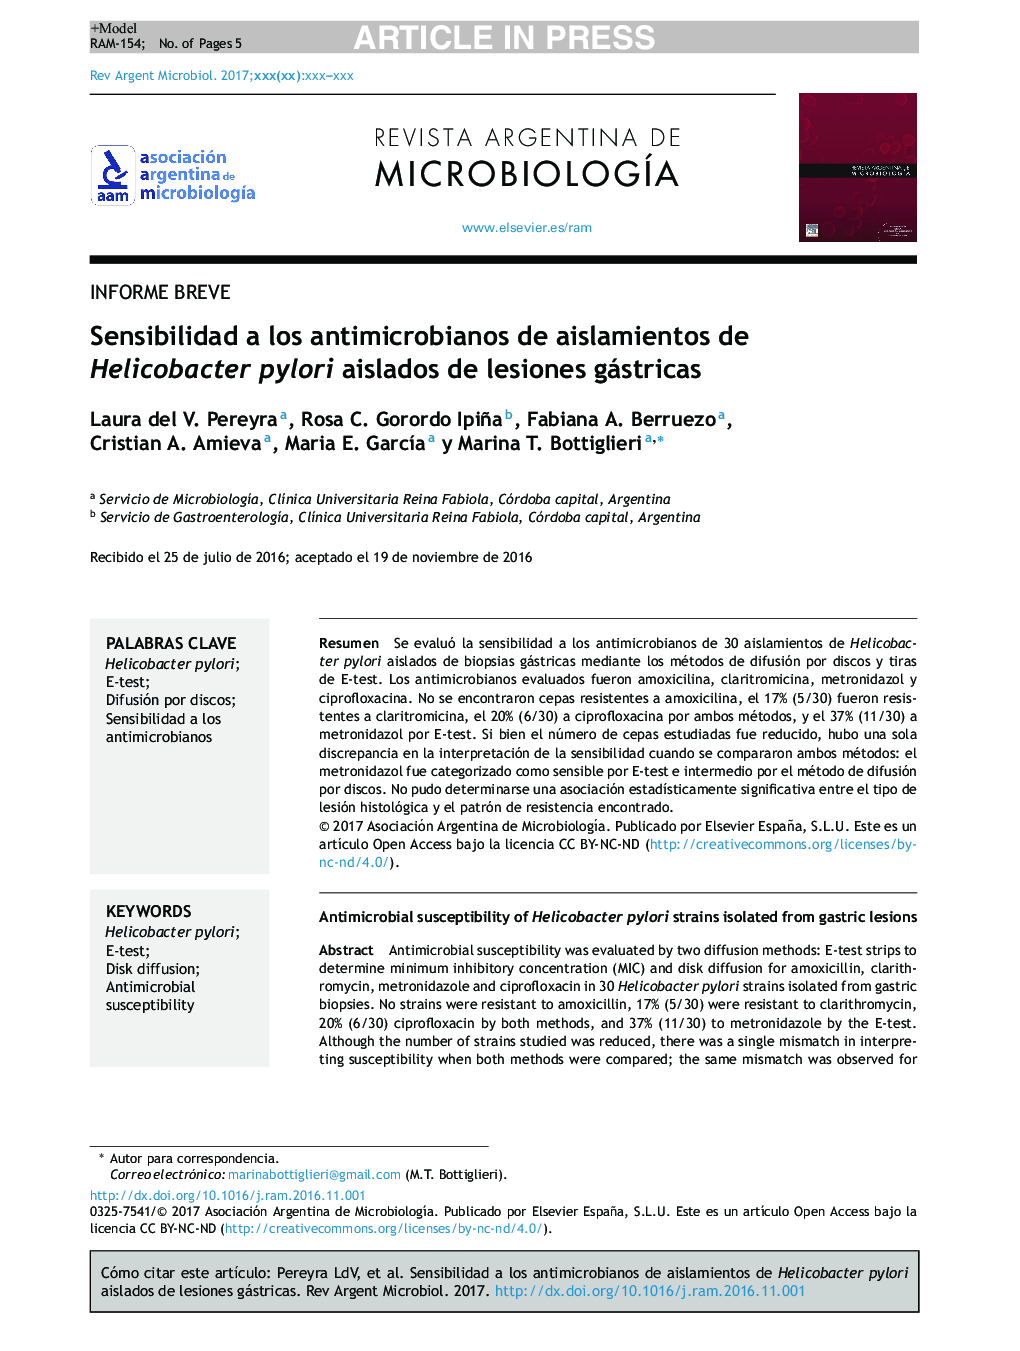 حساسیت ضد میکروبی جدایه های هلیکوباکتر پیلوری جدا شده از ضایعات گنستیک 